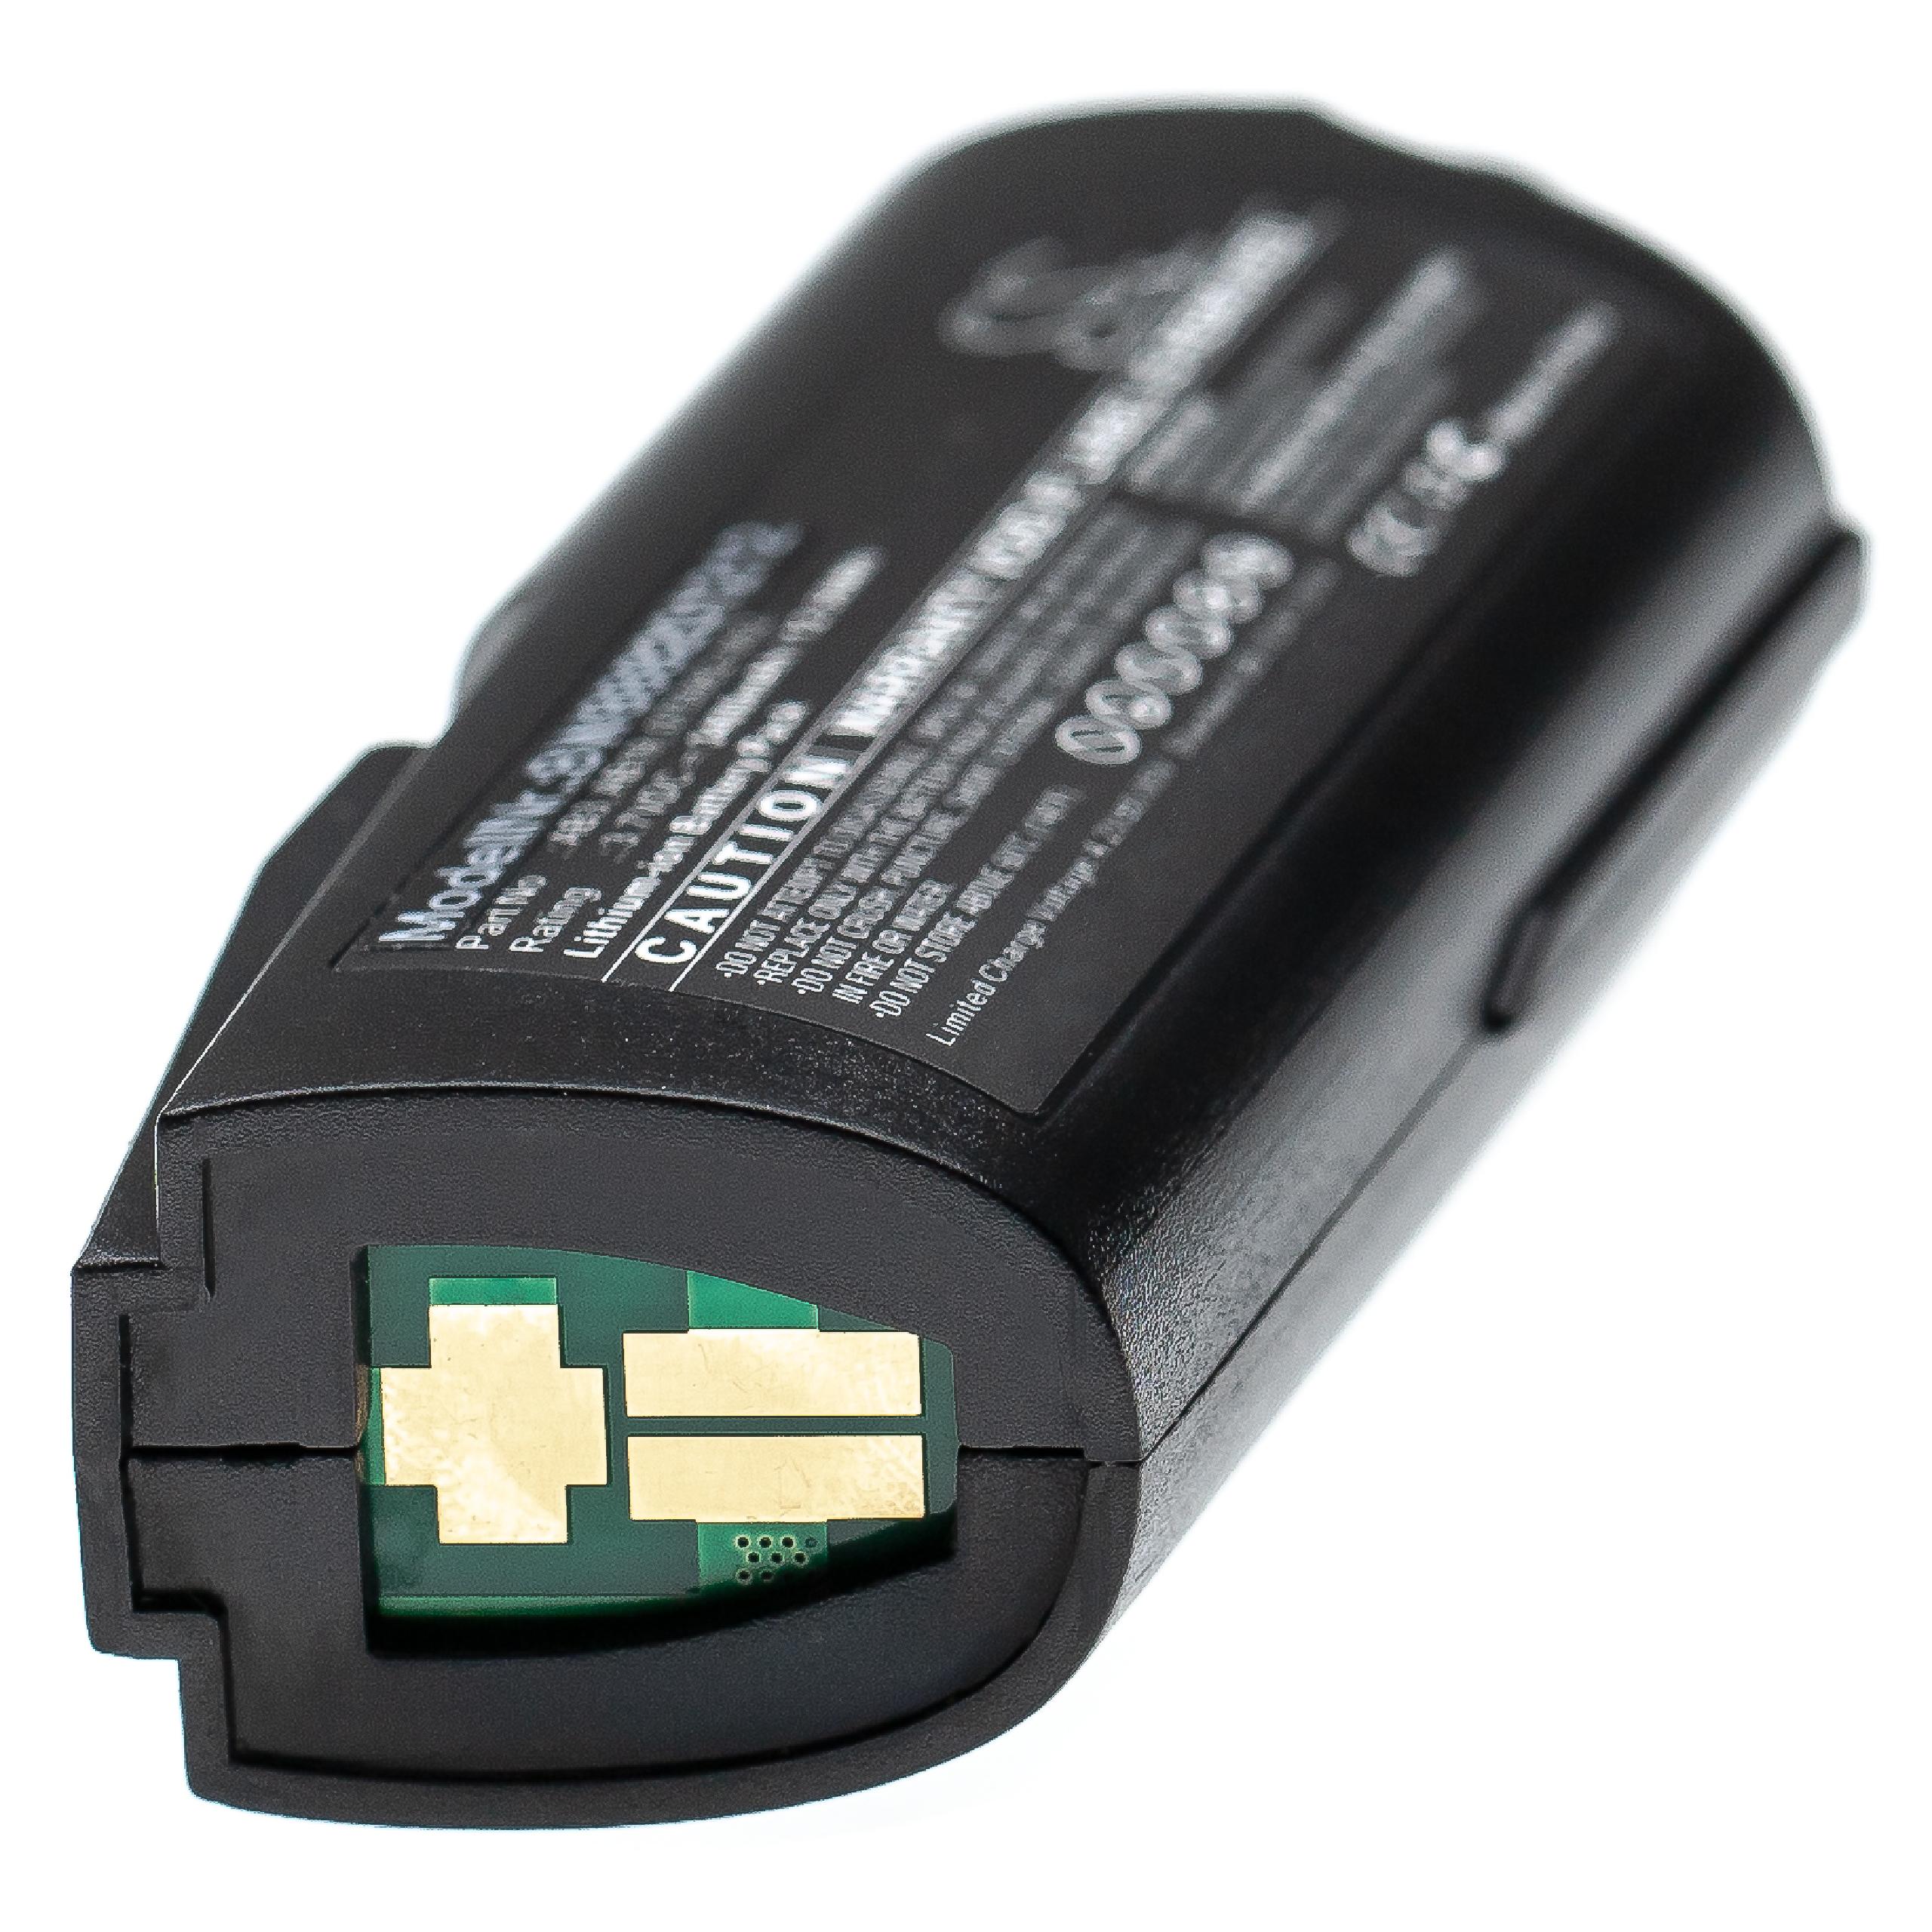 Batterie remplace Intermec AB19, 075082-002, AB3 pour scanner de code-barre - 3400mAh 3,7V Li-ion